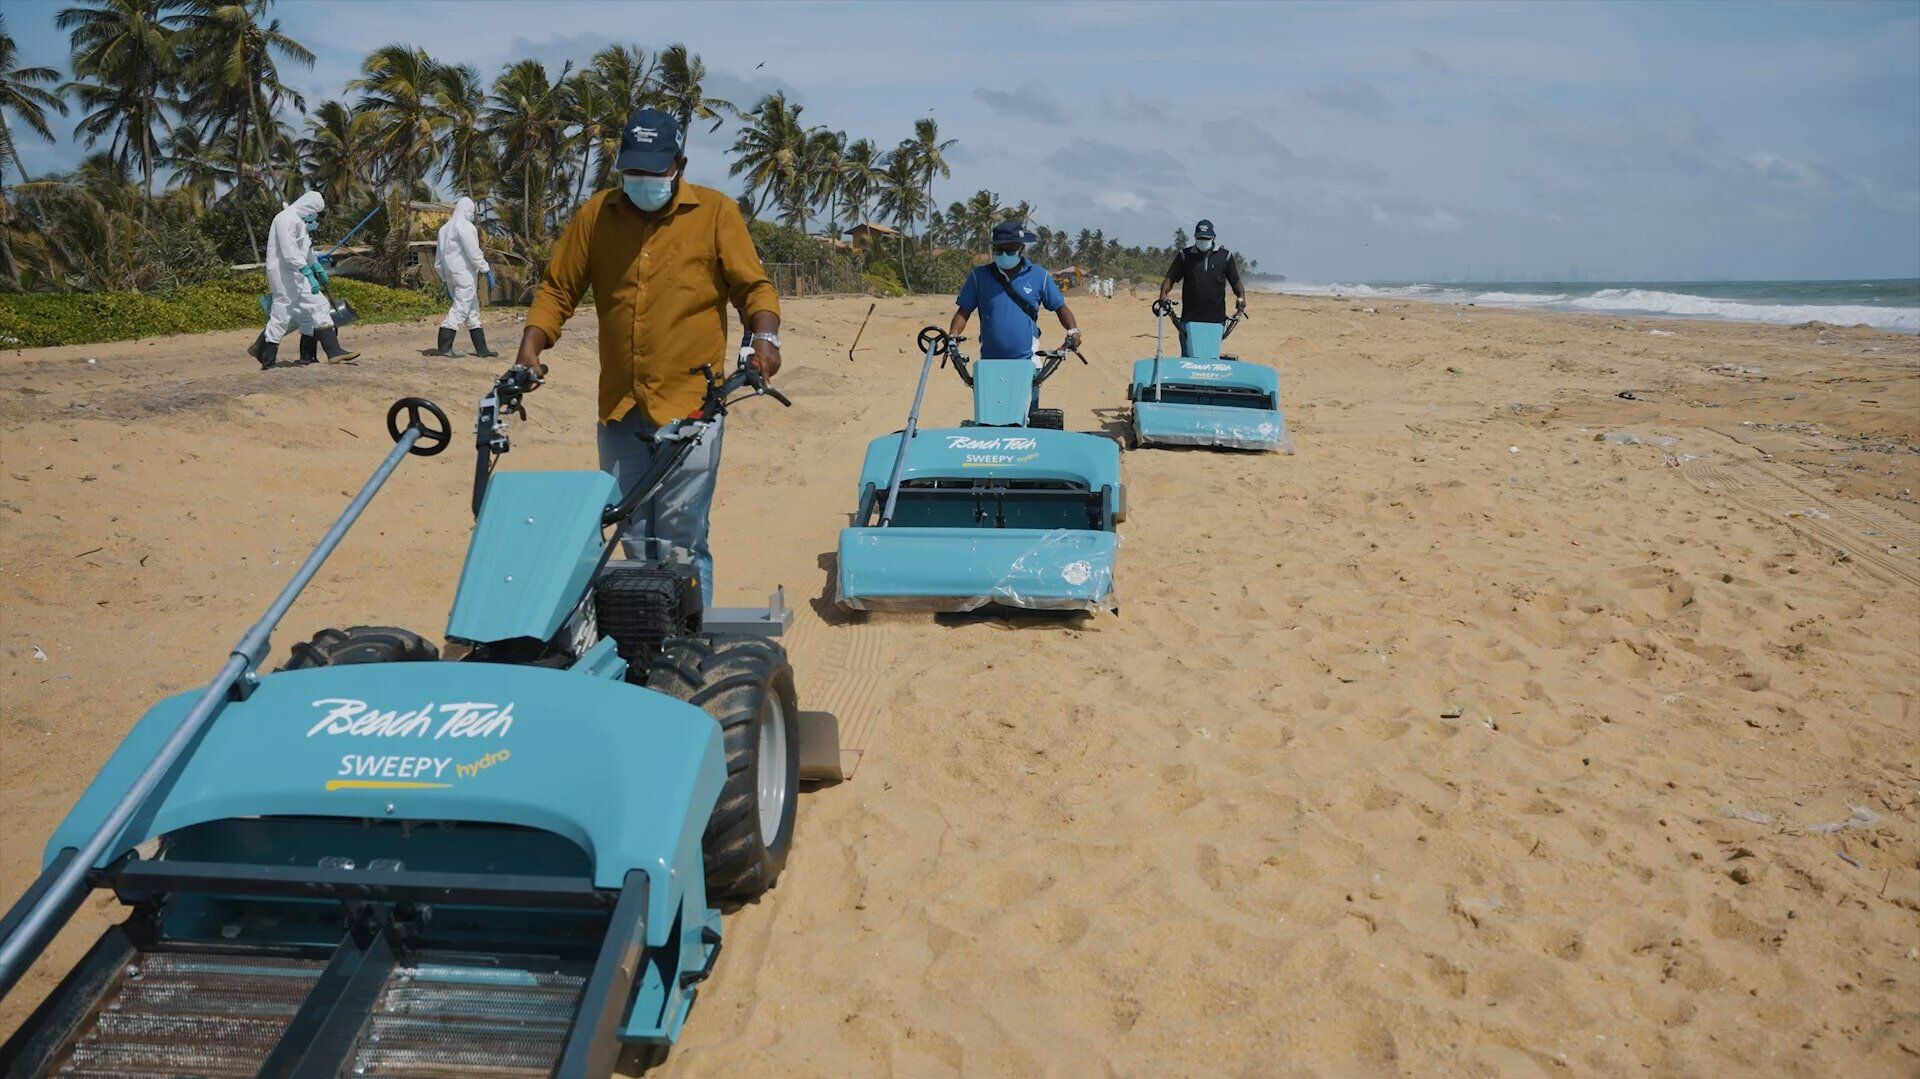 Tres limpiaplayas BeachTech se utilizan en la playa de Sri Lanka para tamizar los nurdles de la arena